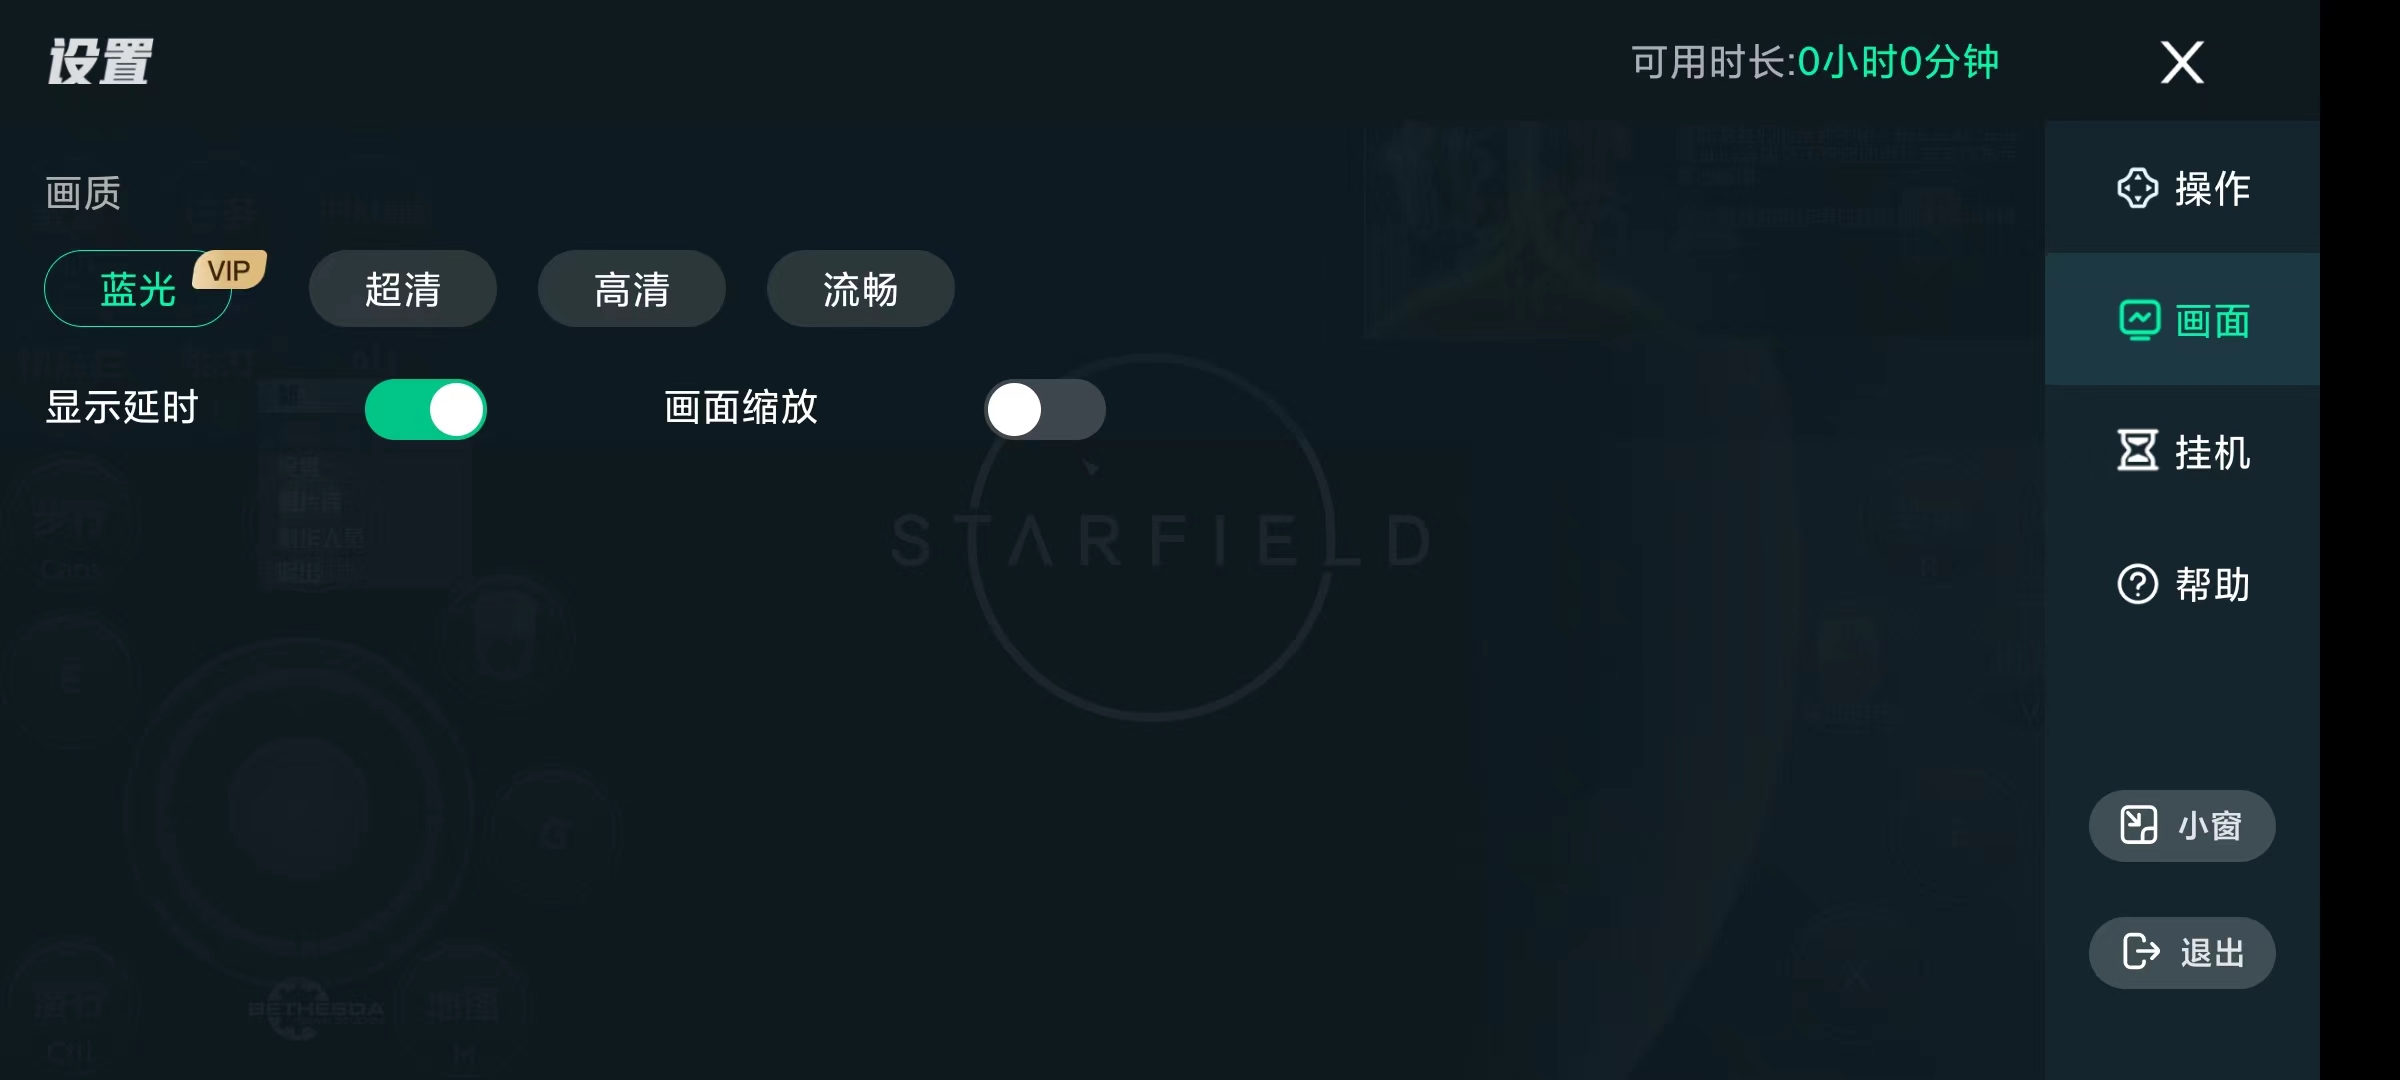 YOWA云游戏2.8.15解锁会员 屠城辅助网www.tcfz1.com5139